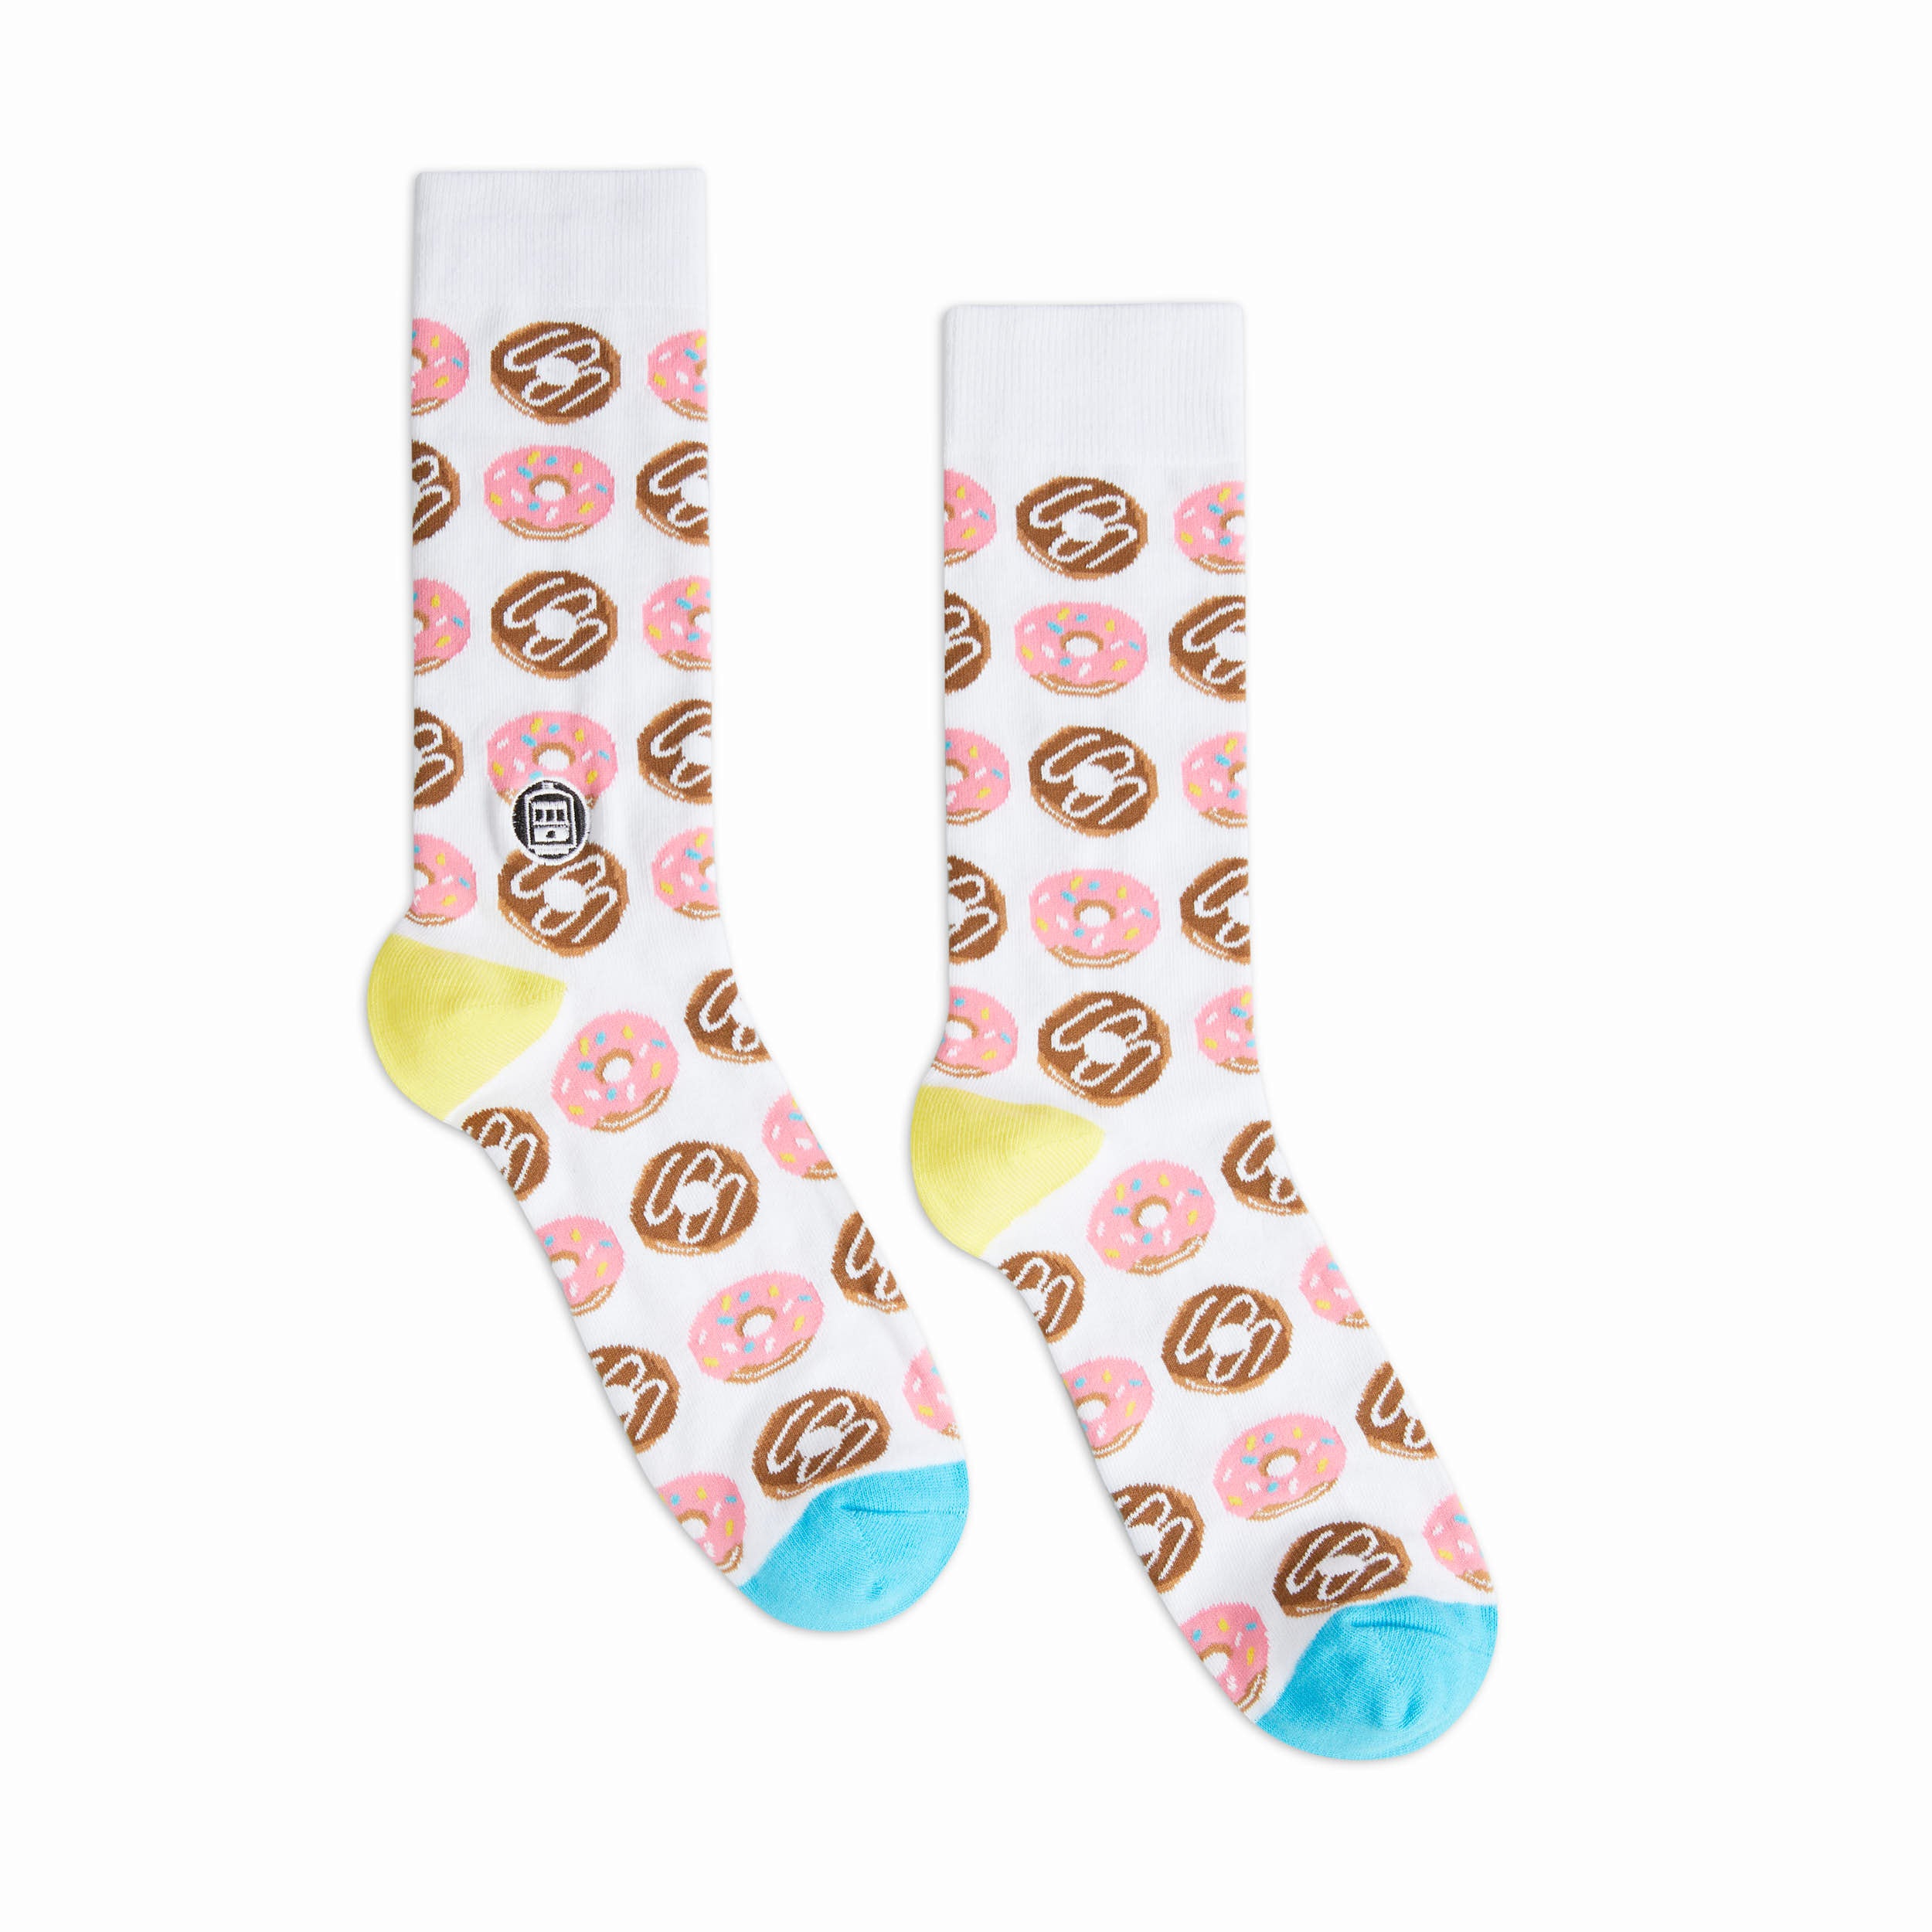 Bonfolk Doughnut Socks